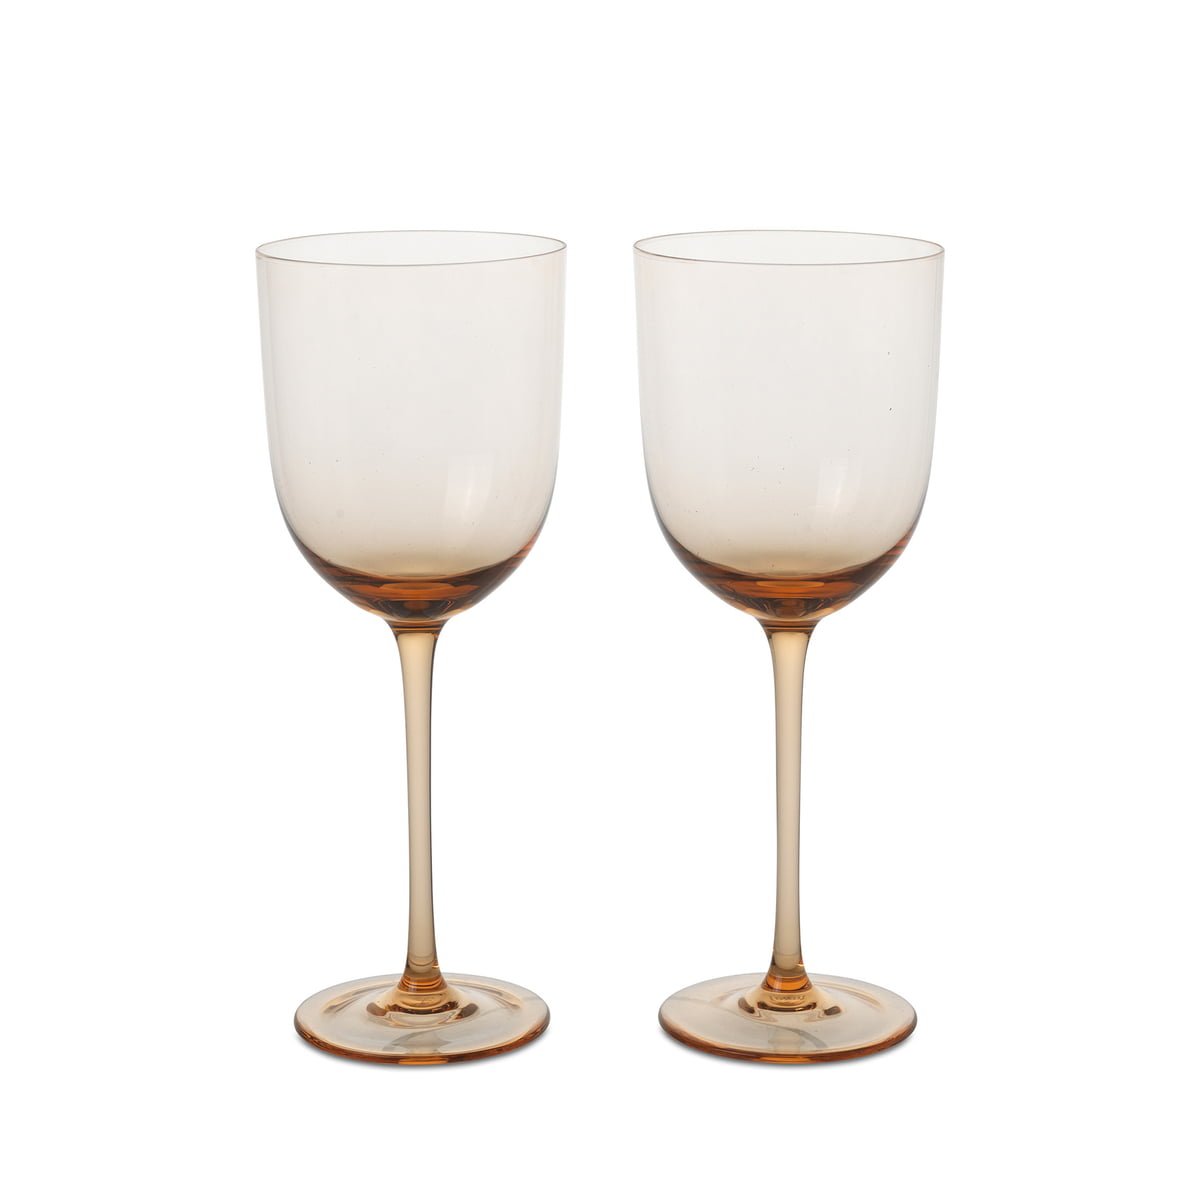 ferm living - host verre à vin blanc, blush (set de 2)